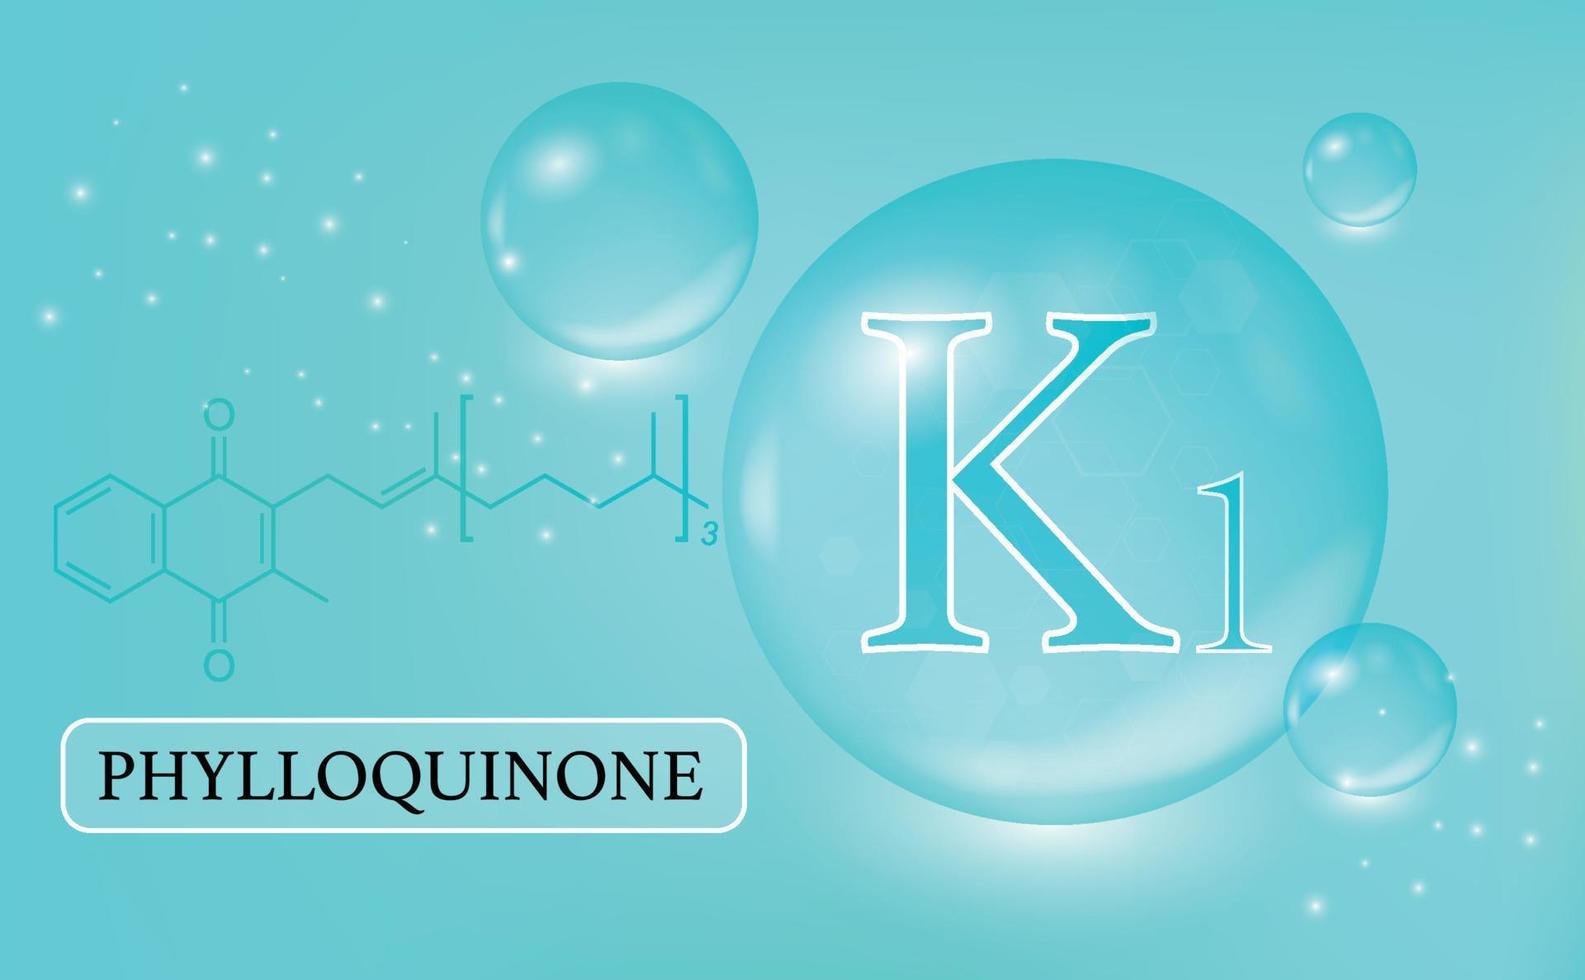 vitamine, k1, phylloquinone, waterdruppels, capsule op een blauwe achtergrond met kleurovergang. vitaminecomplex met chemische formule. informatie medische poster. vector illustratie